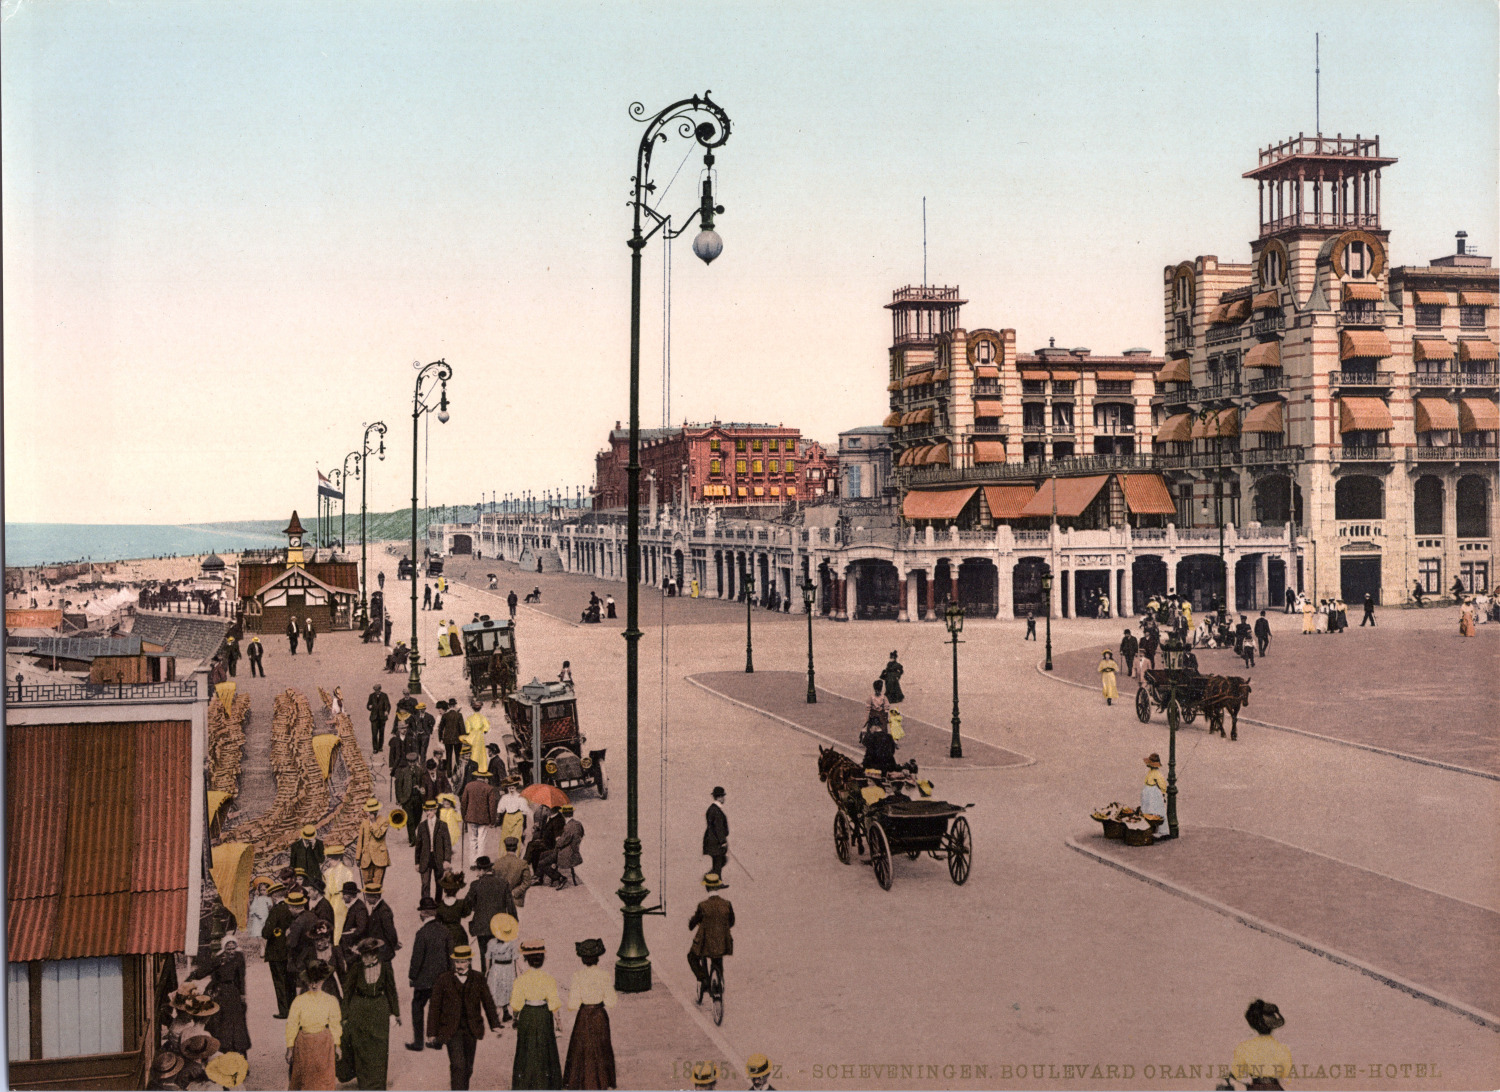 Nederland, Scheveningen. Boulevard. Orange-en-Palace Hotel. vintage print photo